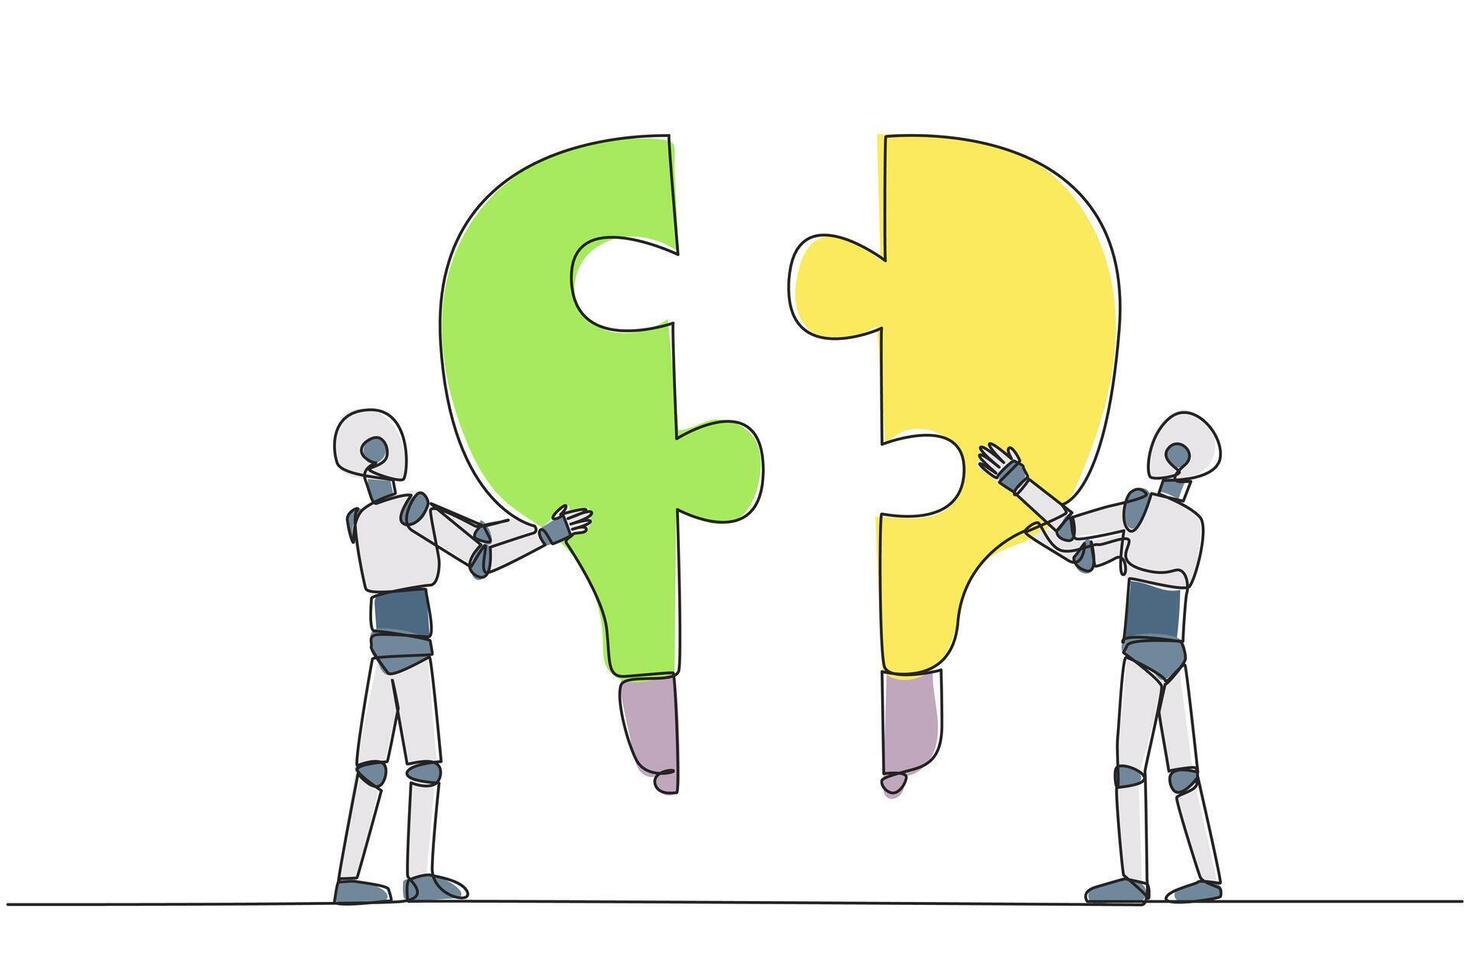 Single einer Linie Zeichnung zwei Roboter halten oben zwei glühbirnenförmig Puzzle Stücke. Metaphern erheben und Vereinen brillant Ideen. Zusammenarbeit zwischen Roboter. kontinuierlich Linie Design Grafik Illustration vektor